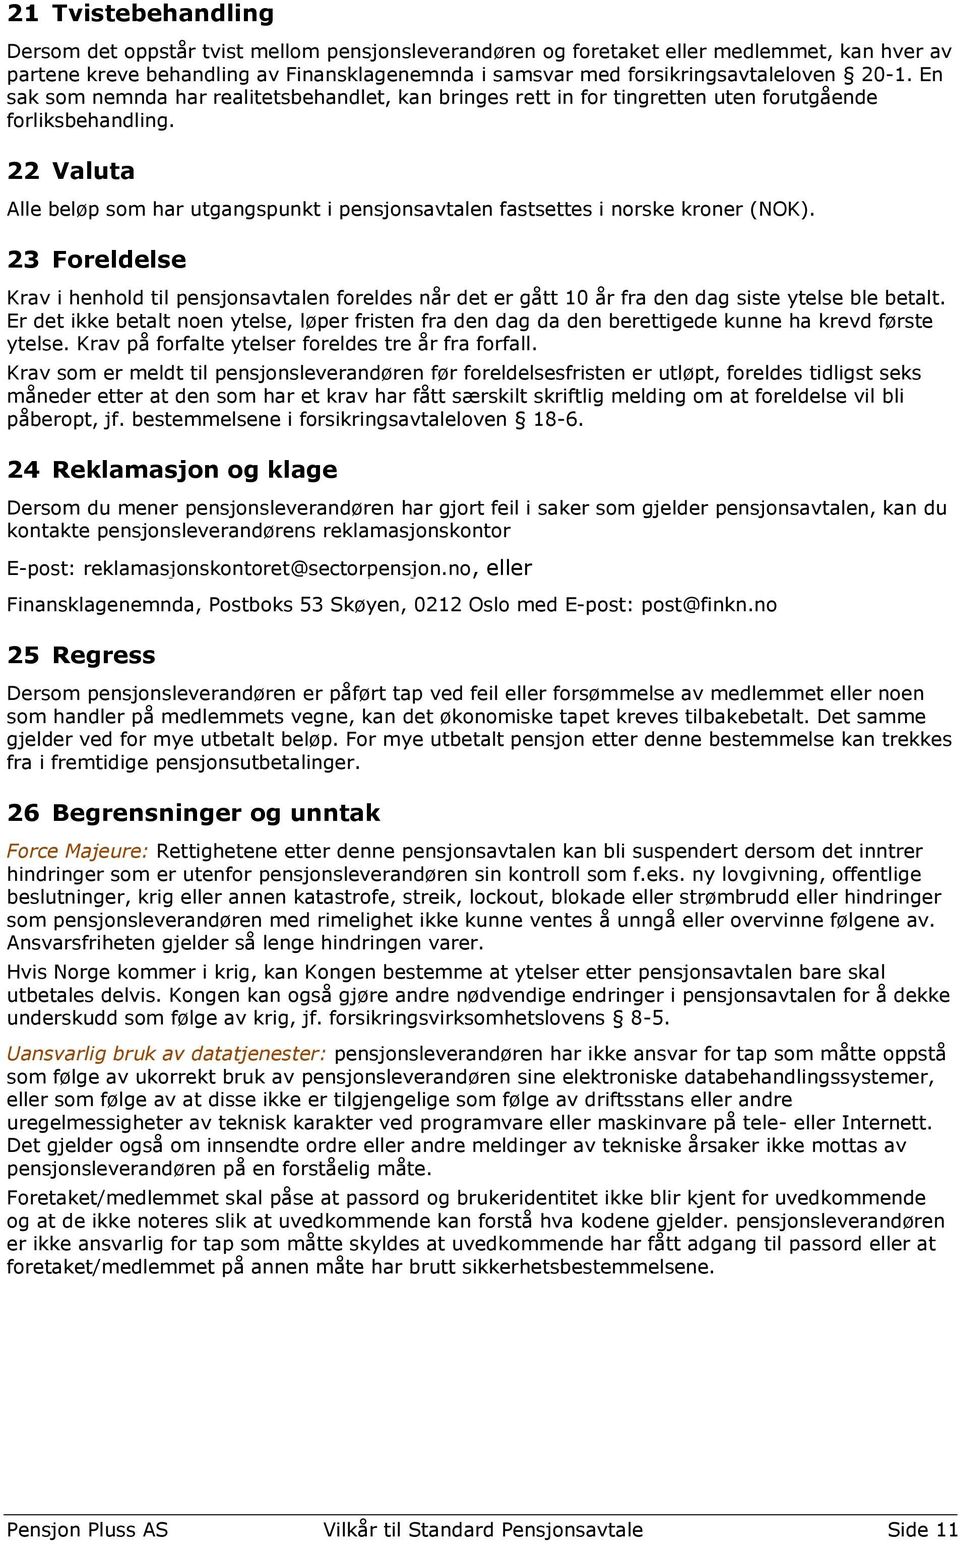 22 Valuta Alle beløp som har utgangspunkt i pensjonsavtalen fastsettes i norske kroner (NOK).